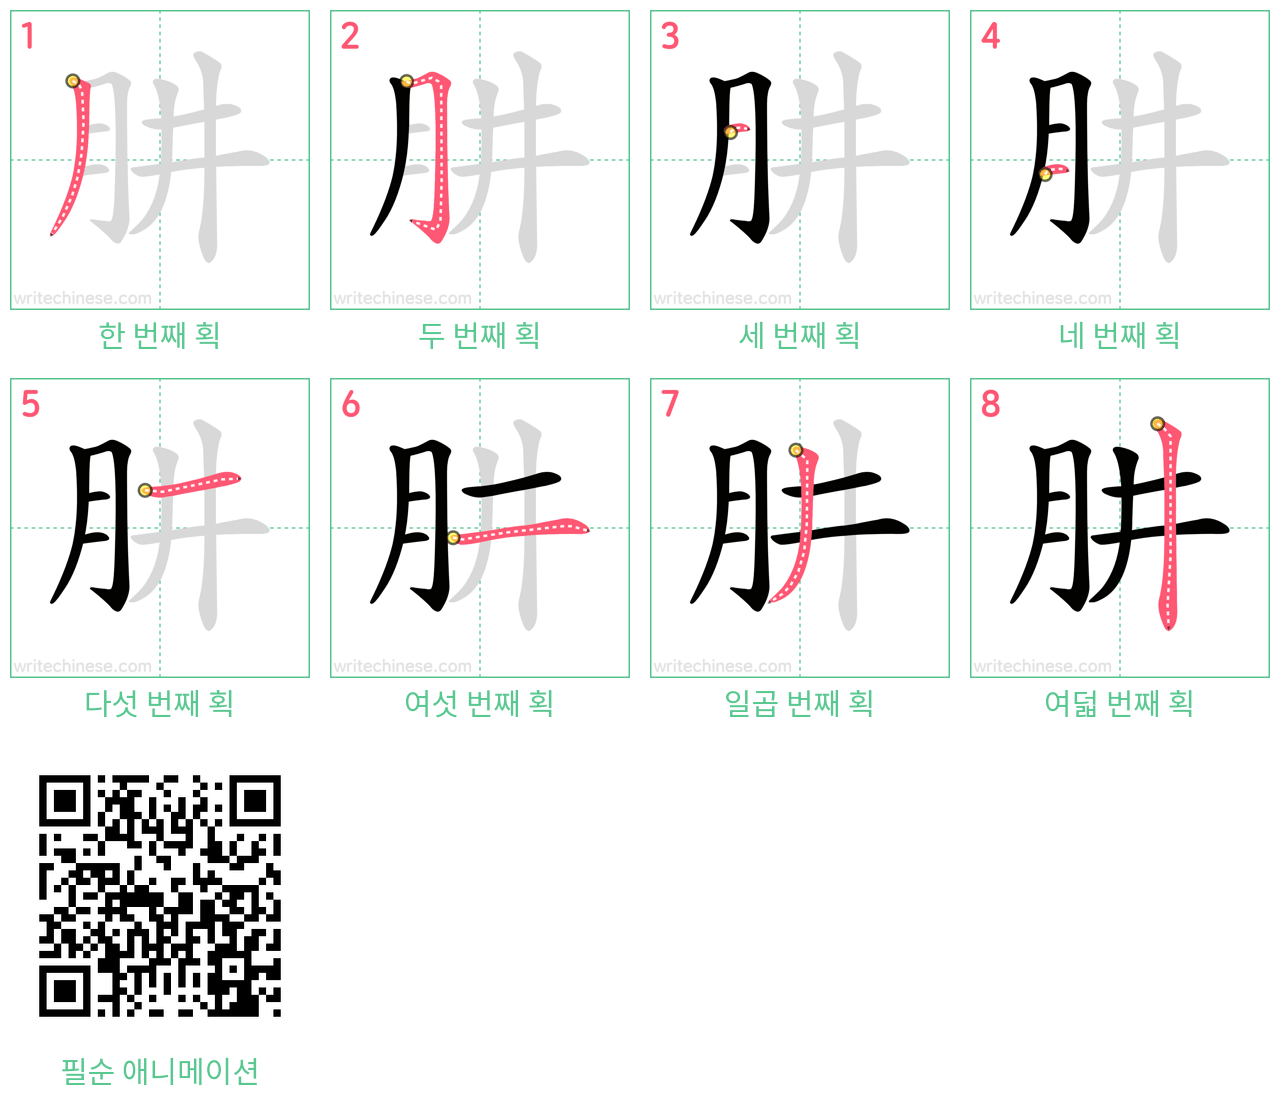 肼 step-by-step stroke order diagrams